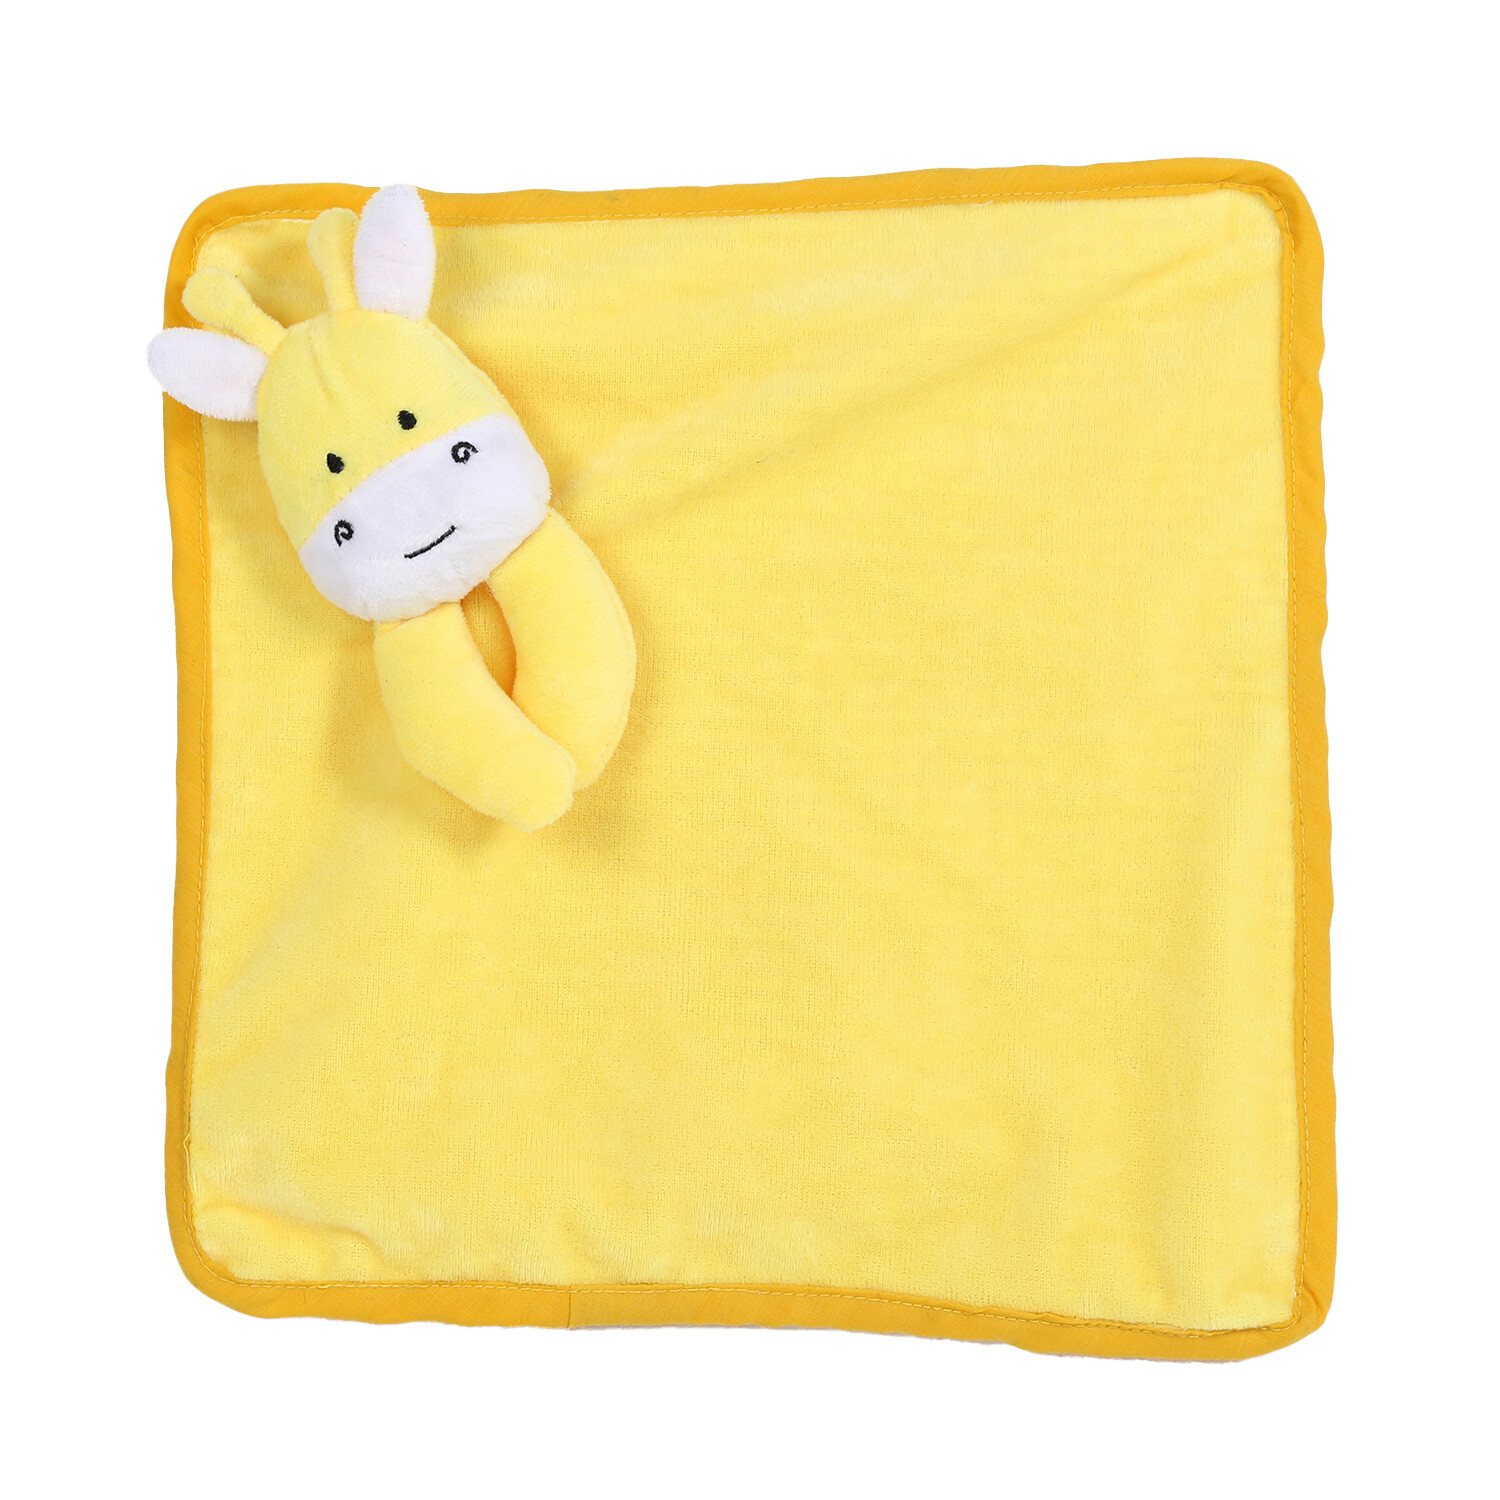 Comforter Giraffe Dog Toy - Yellow Image 1